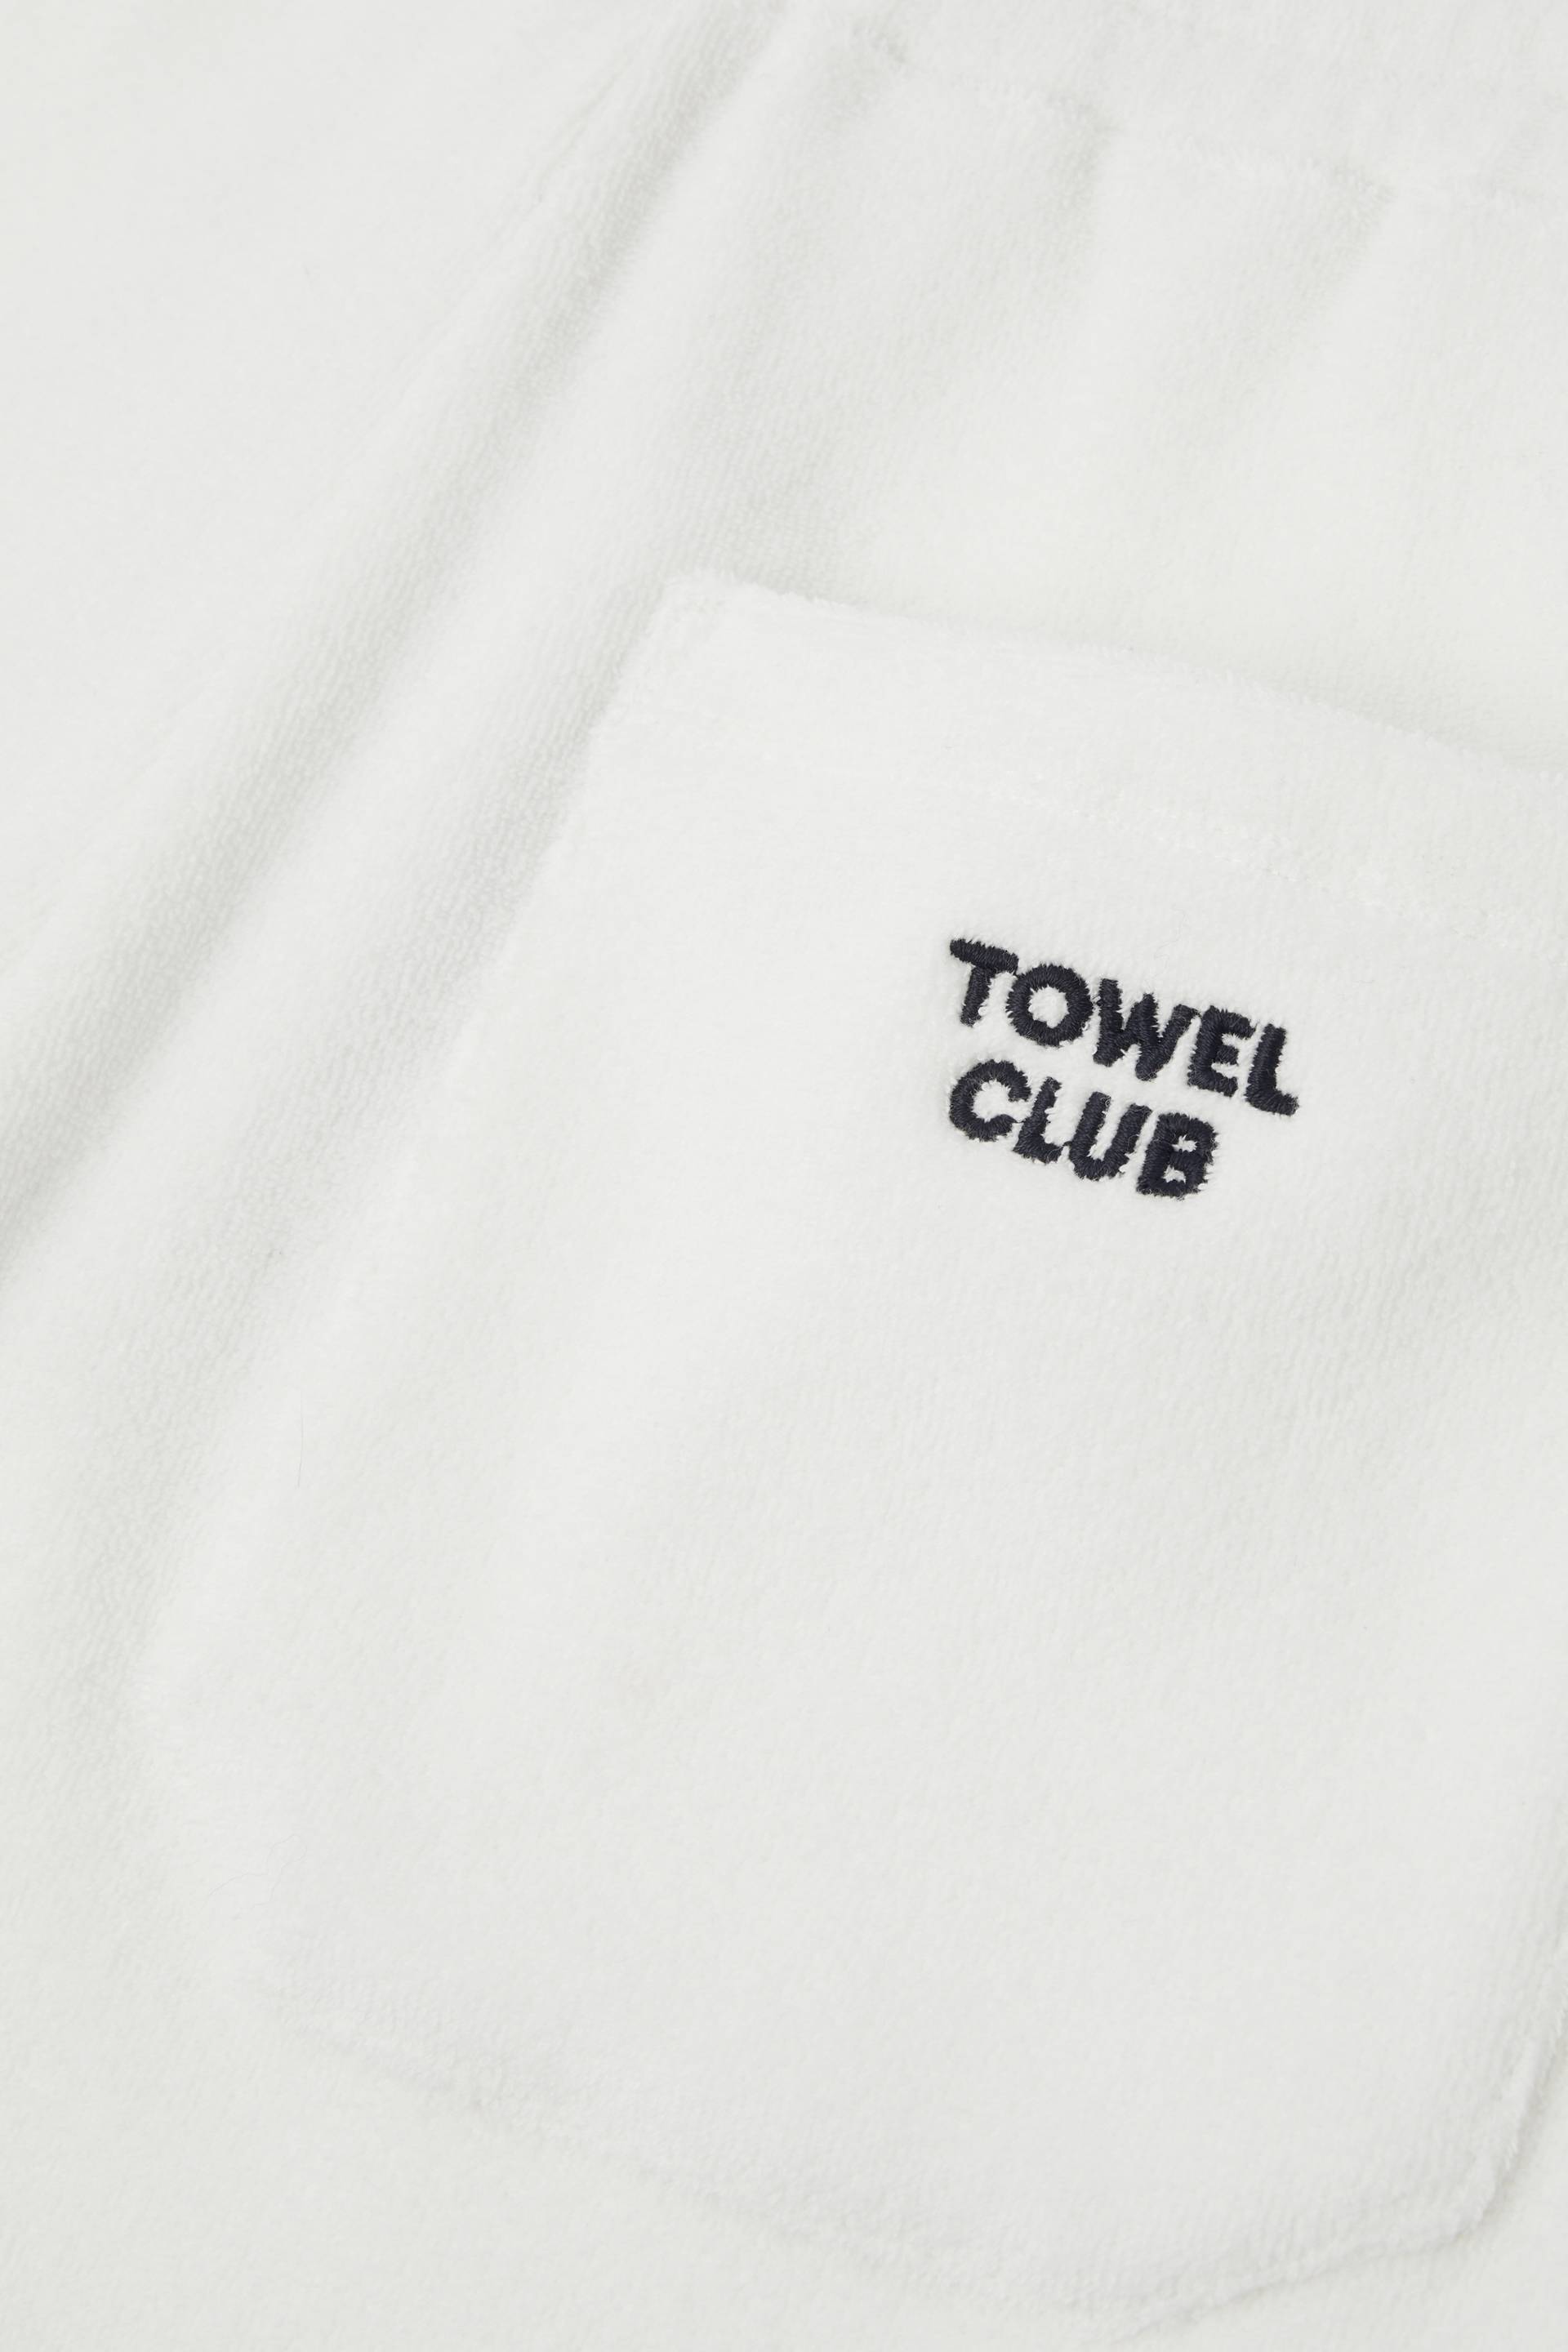 Towel Club Towel Club Shorts Off-White - 4